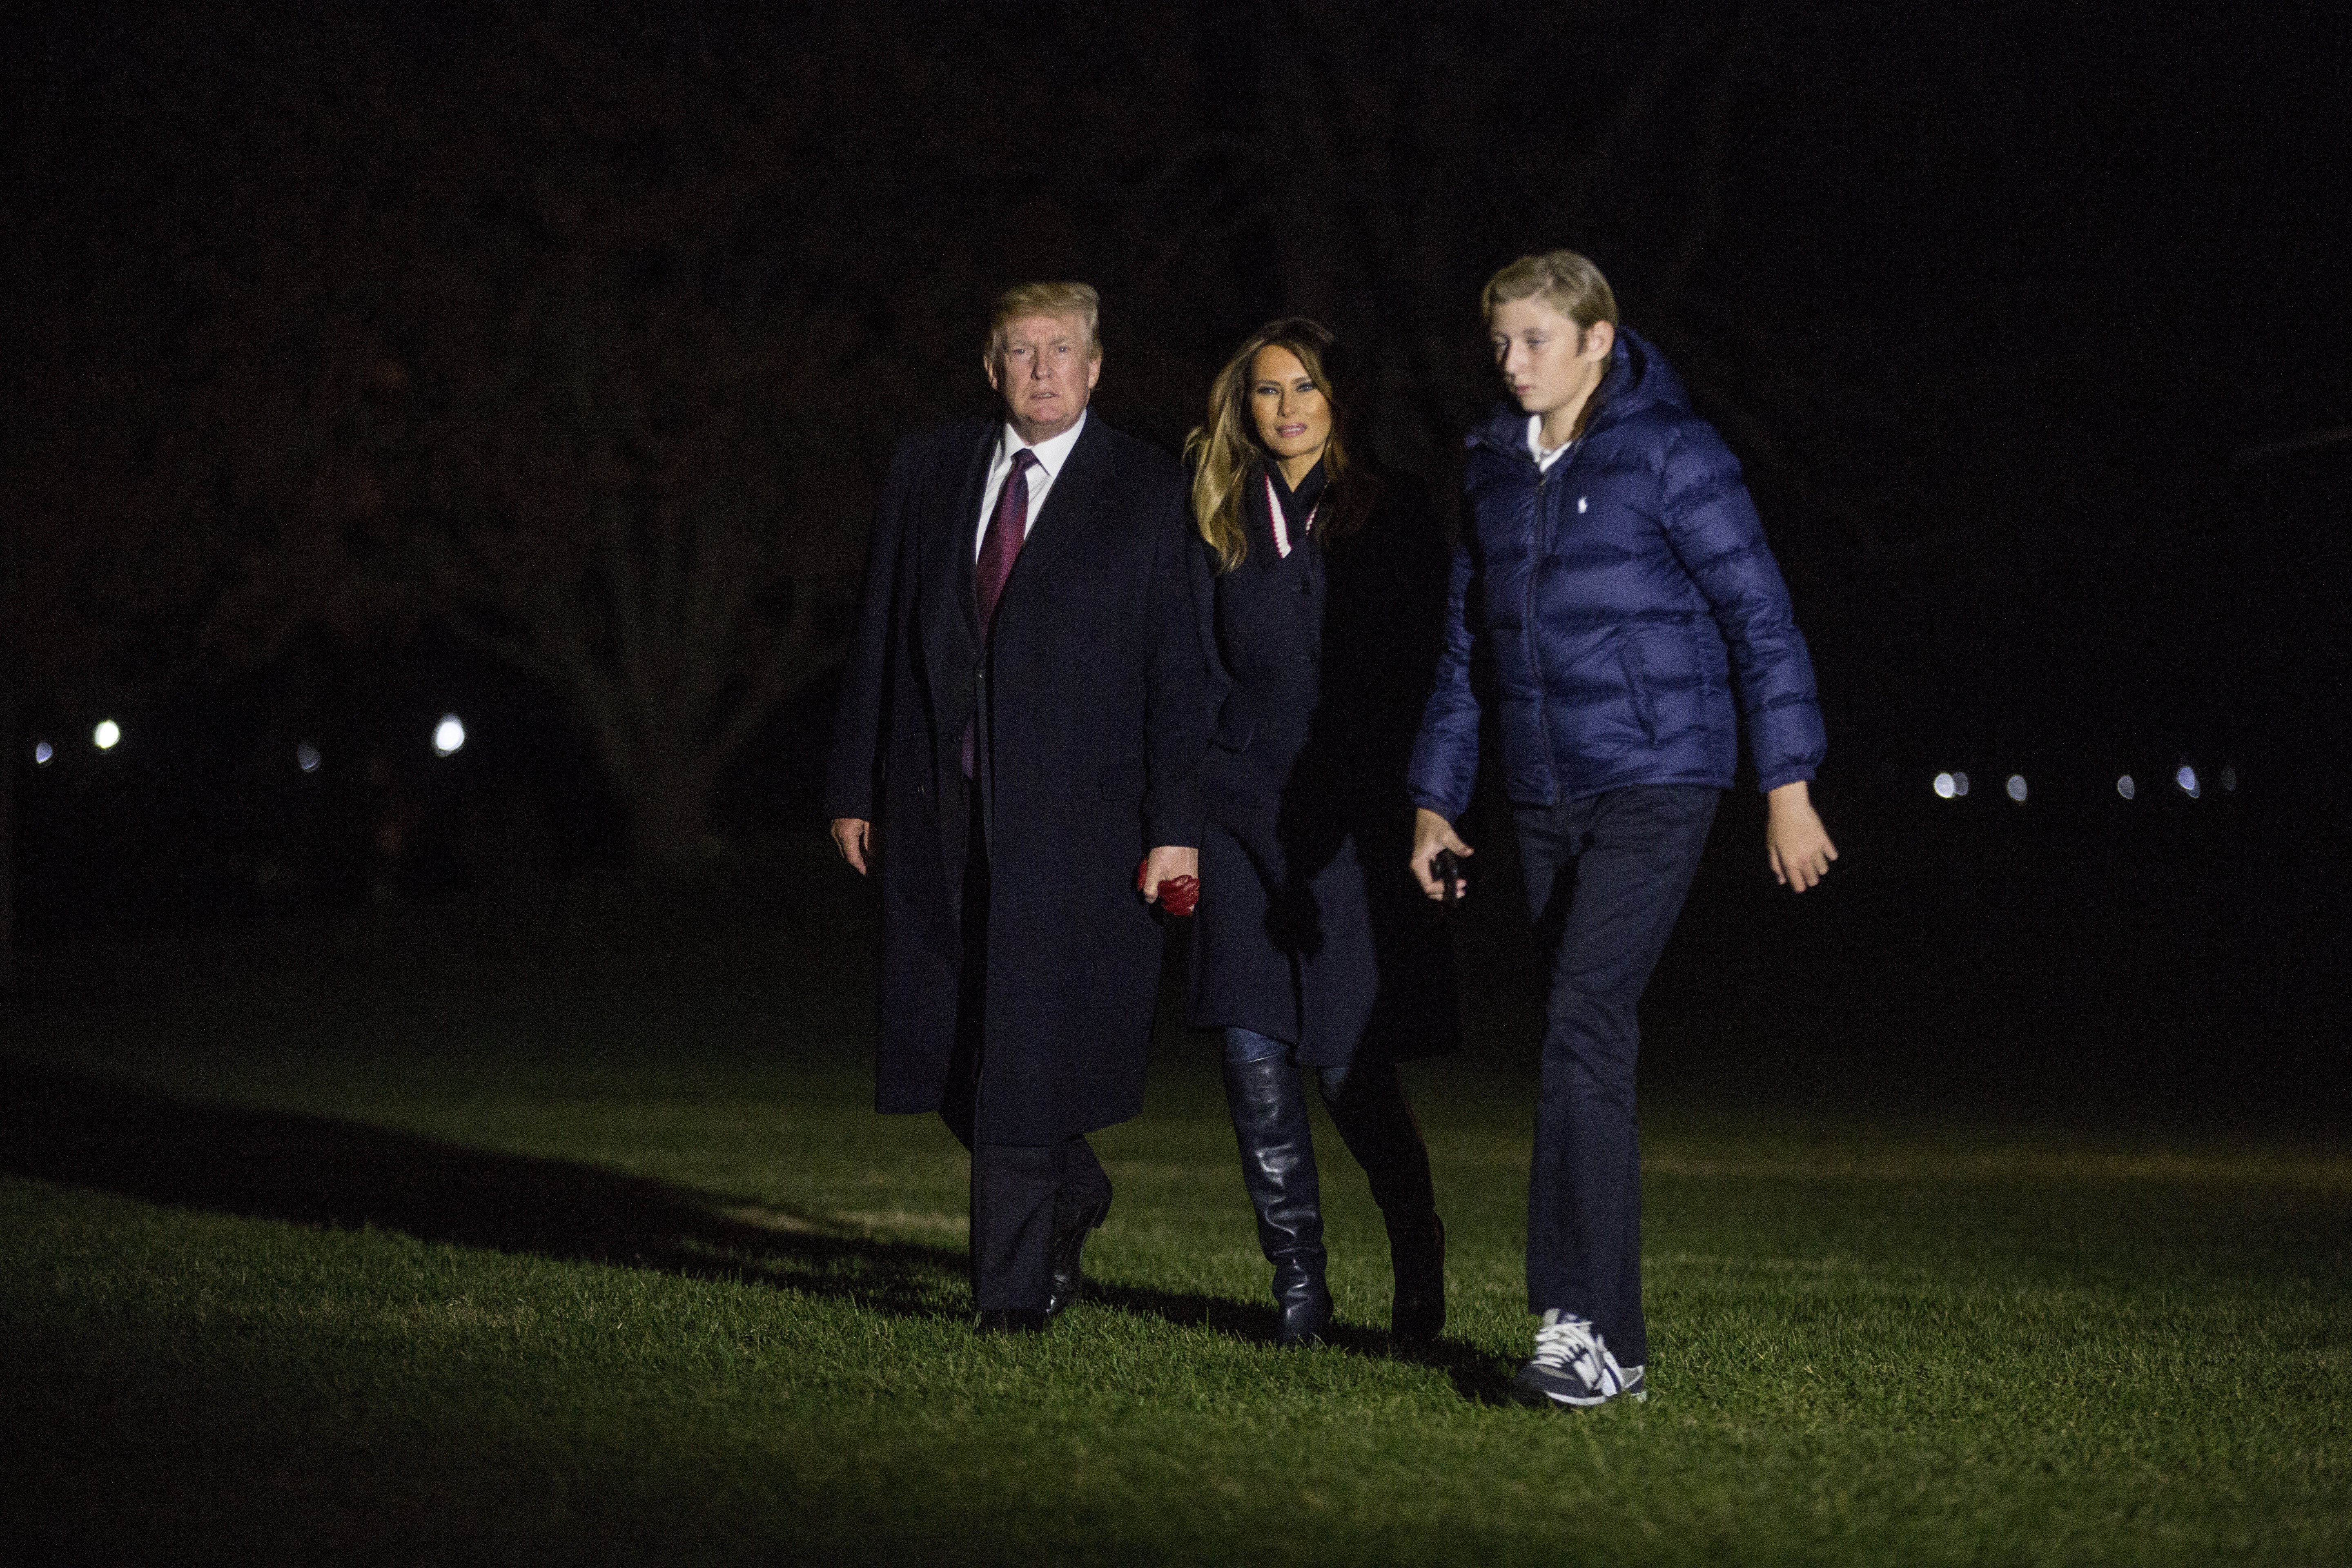 El presidente Donald Trump, la primera dama Melania Trump y su hijo Barron Trump cruzan el jardín sur de la Casa Blanca el 25 de noviembre de 2018. | Foto: Getty Images